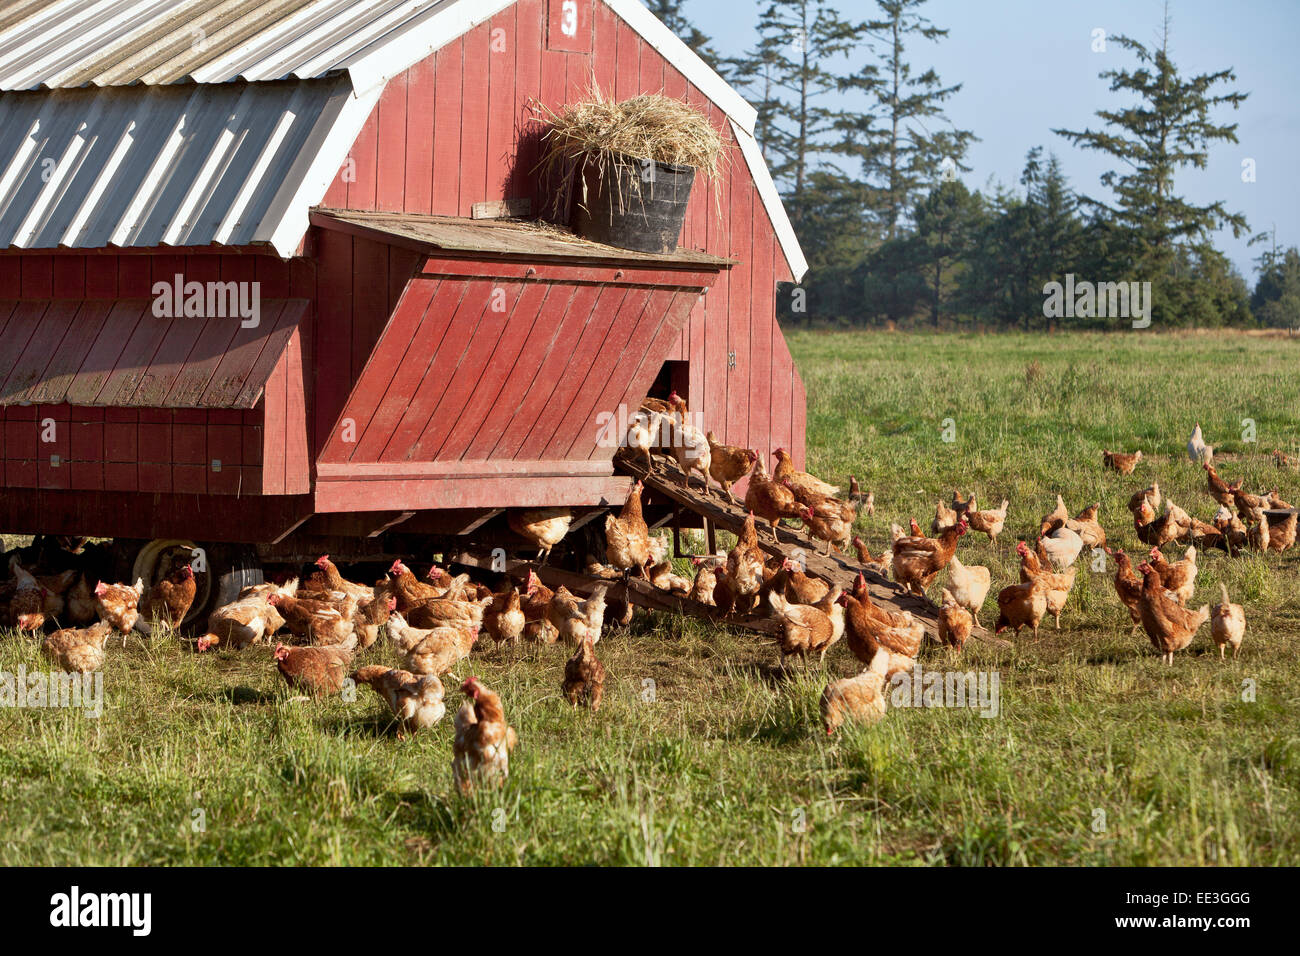 Freie Auswahl organischer Hühner, tragbares Gehäuse, "Gallus domestcus". Stockfoto